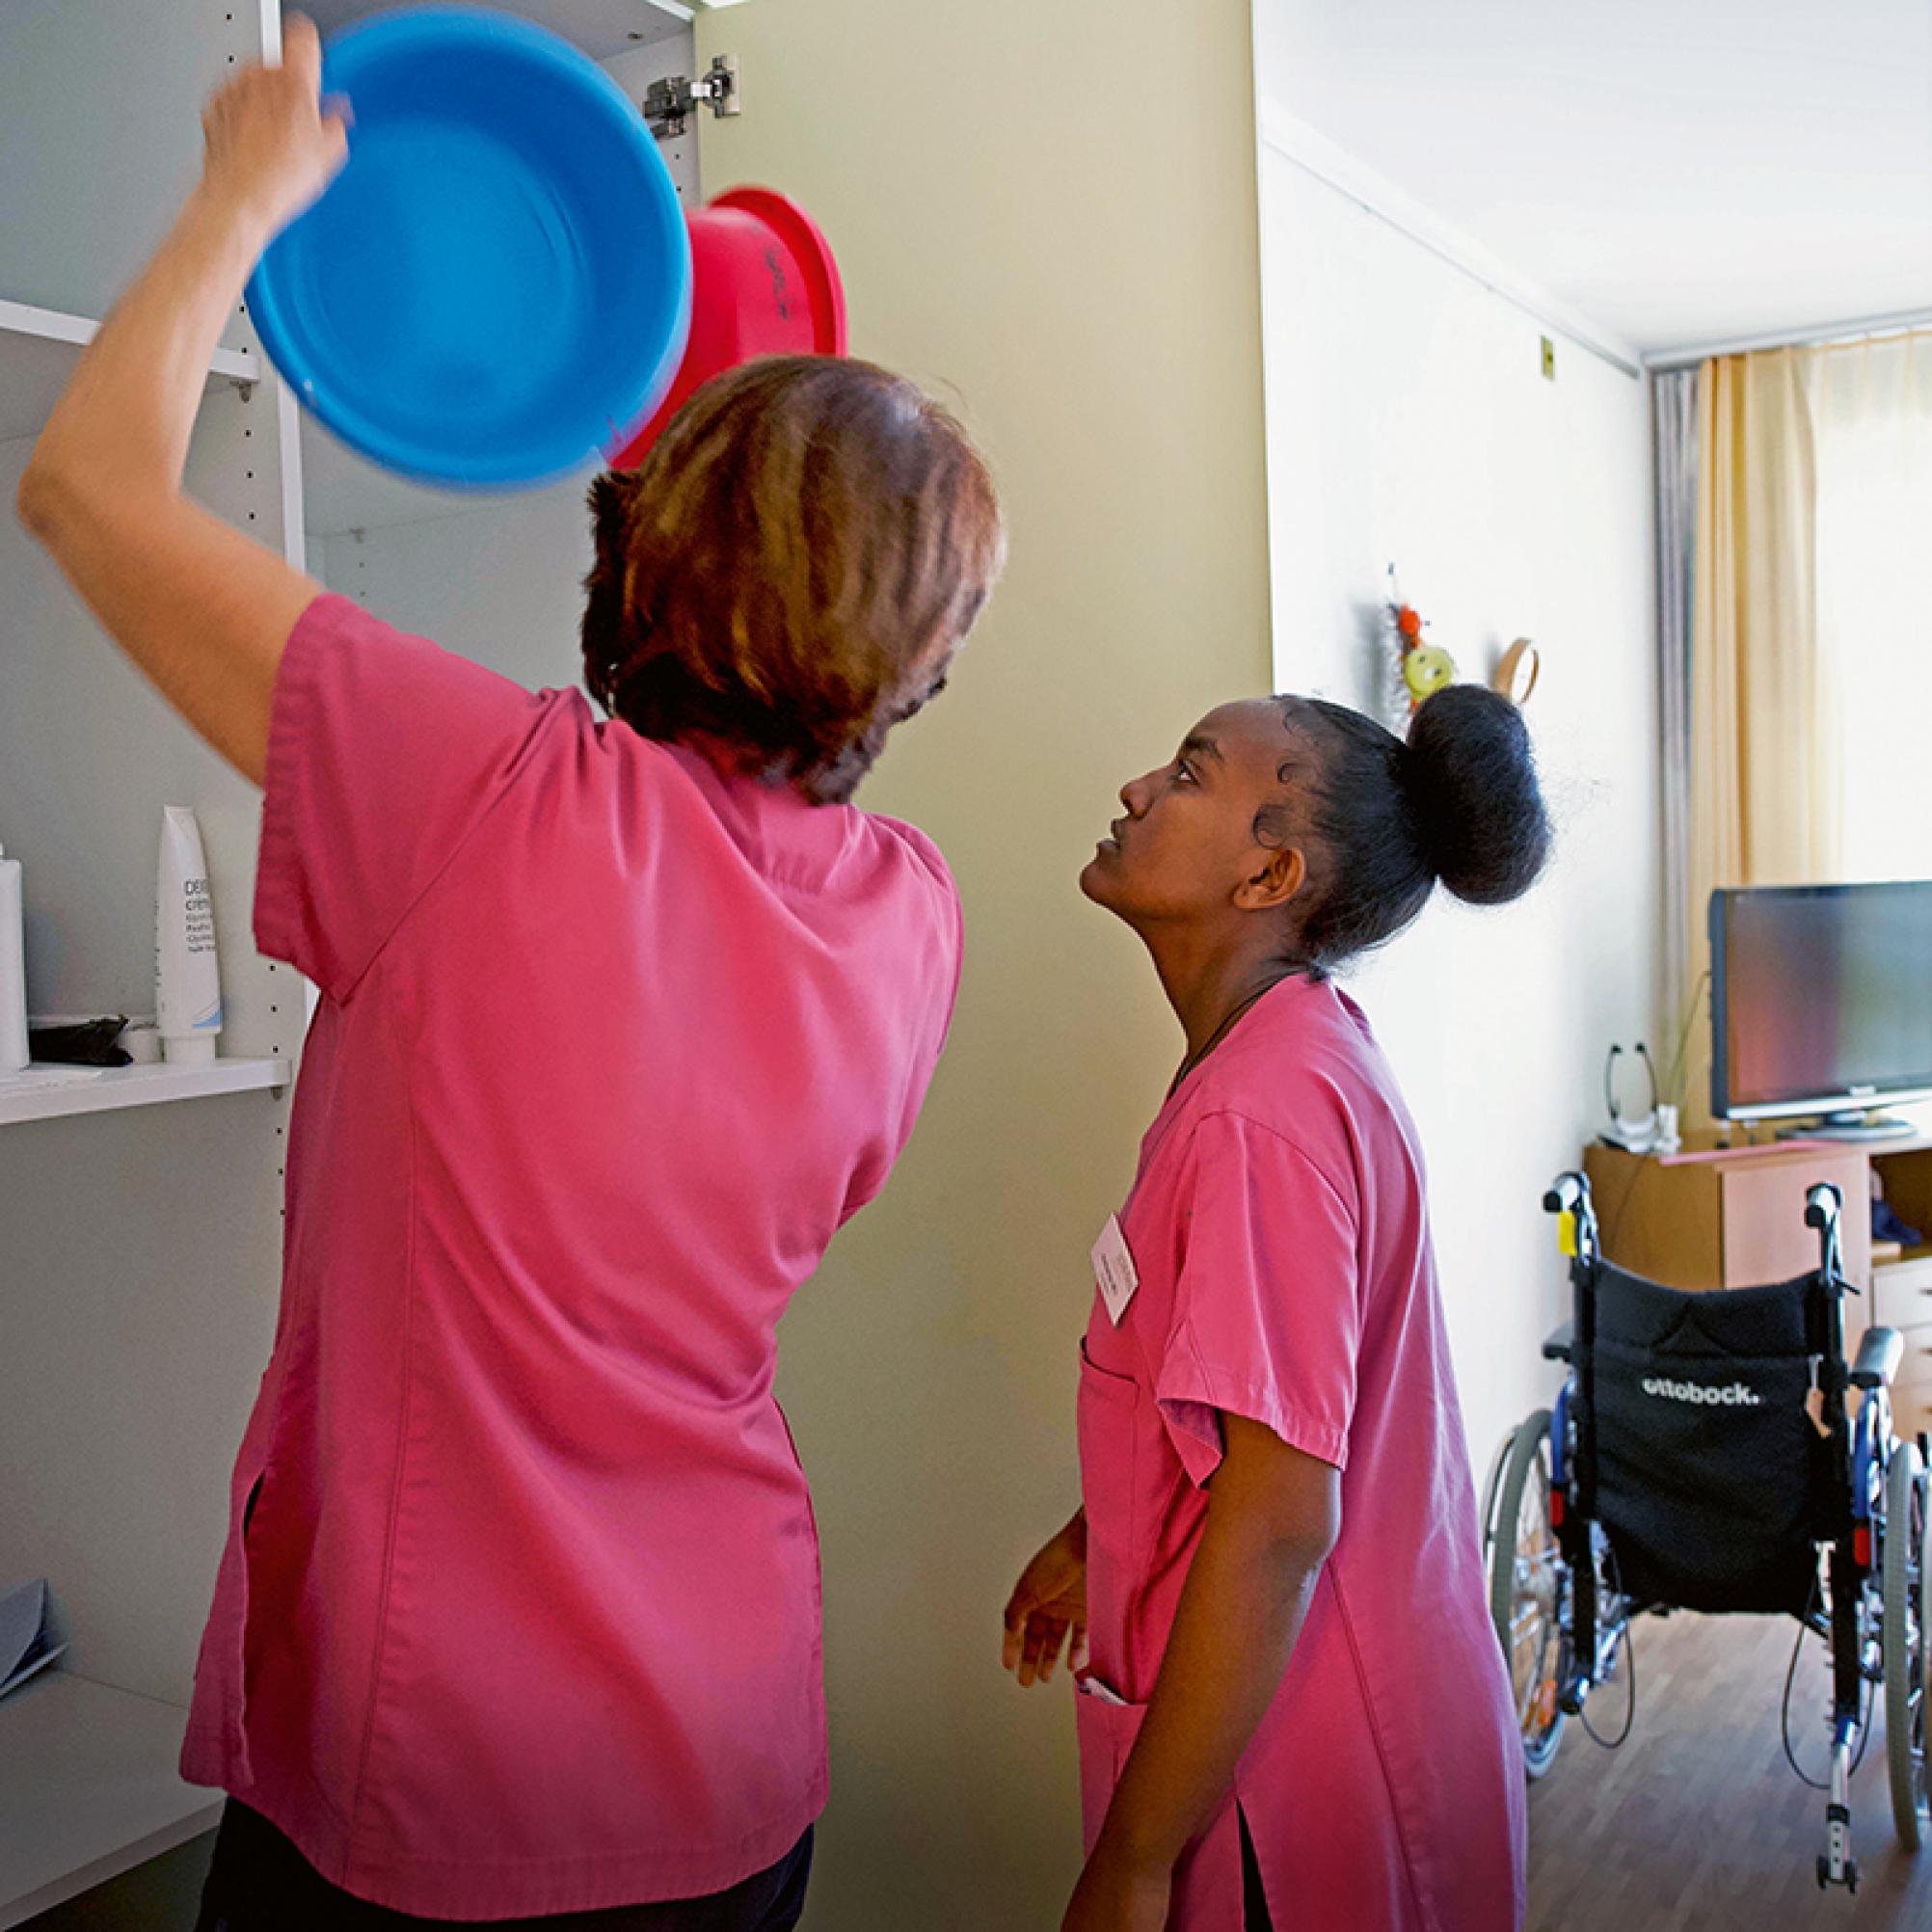 La foto mostra una scena in una camera di una casa per anziani: un’assistente di cura mostra a una giovane donna cosa c’è da fare.